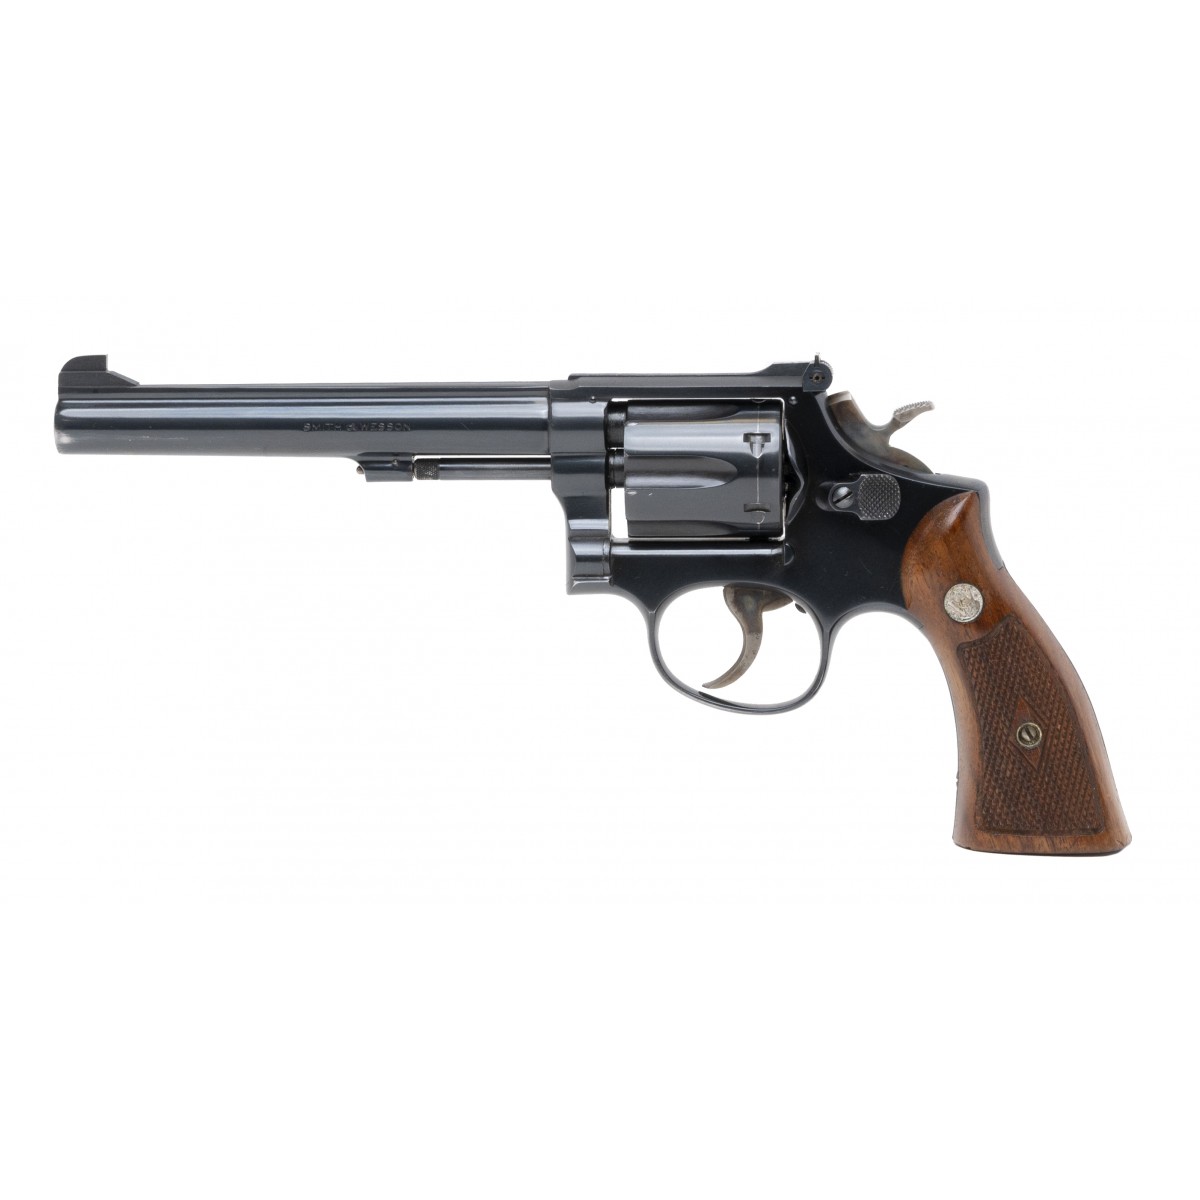 Smith & Wesson K22 .22 LR caliber revolver.